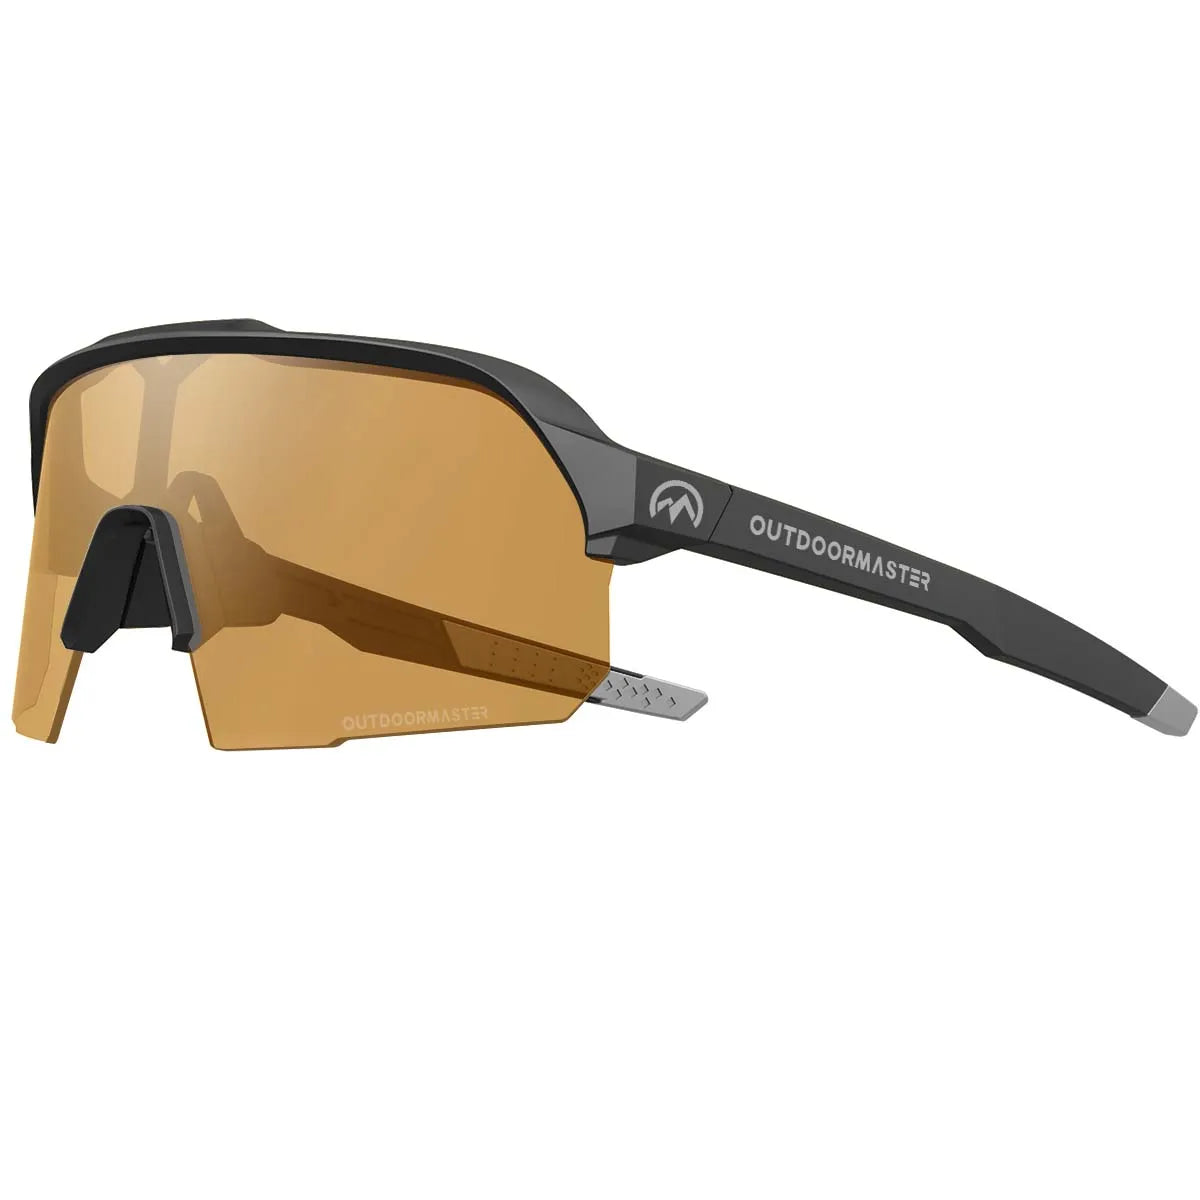 Hawk HD Polarized Sport Sunglasses